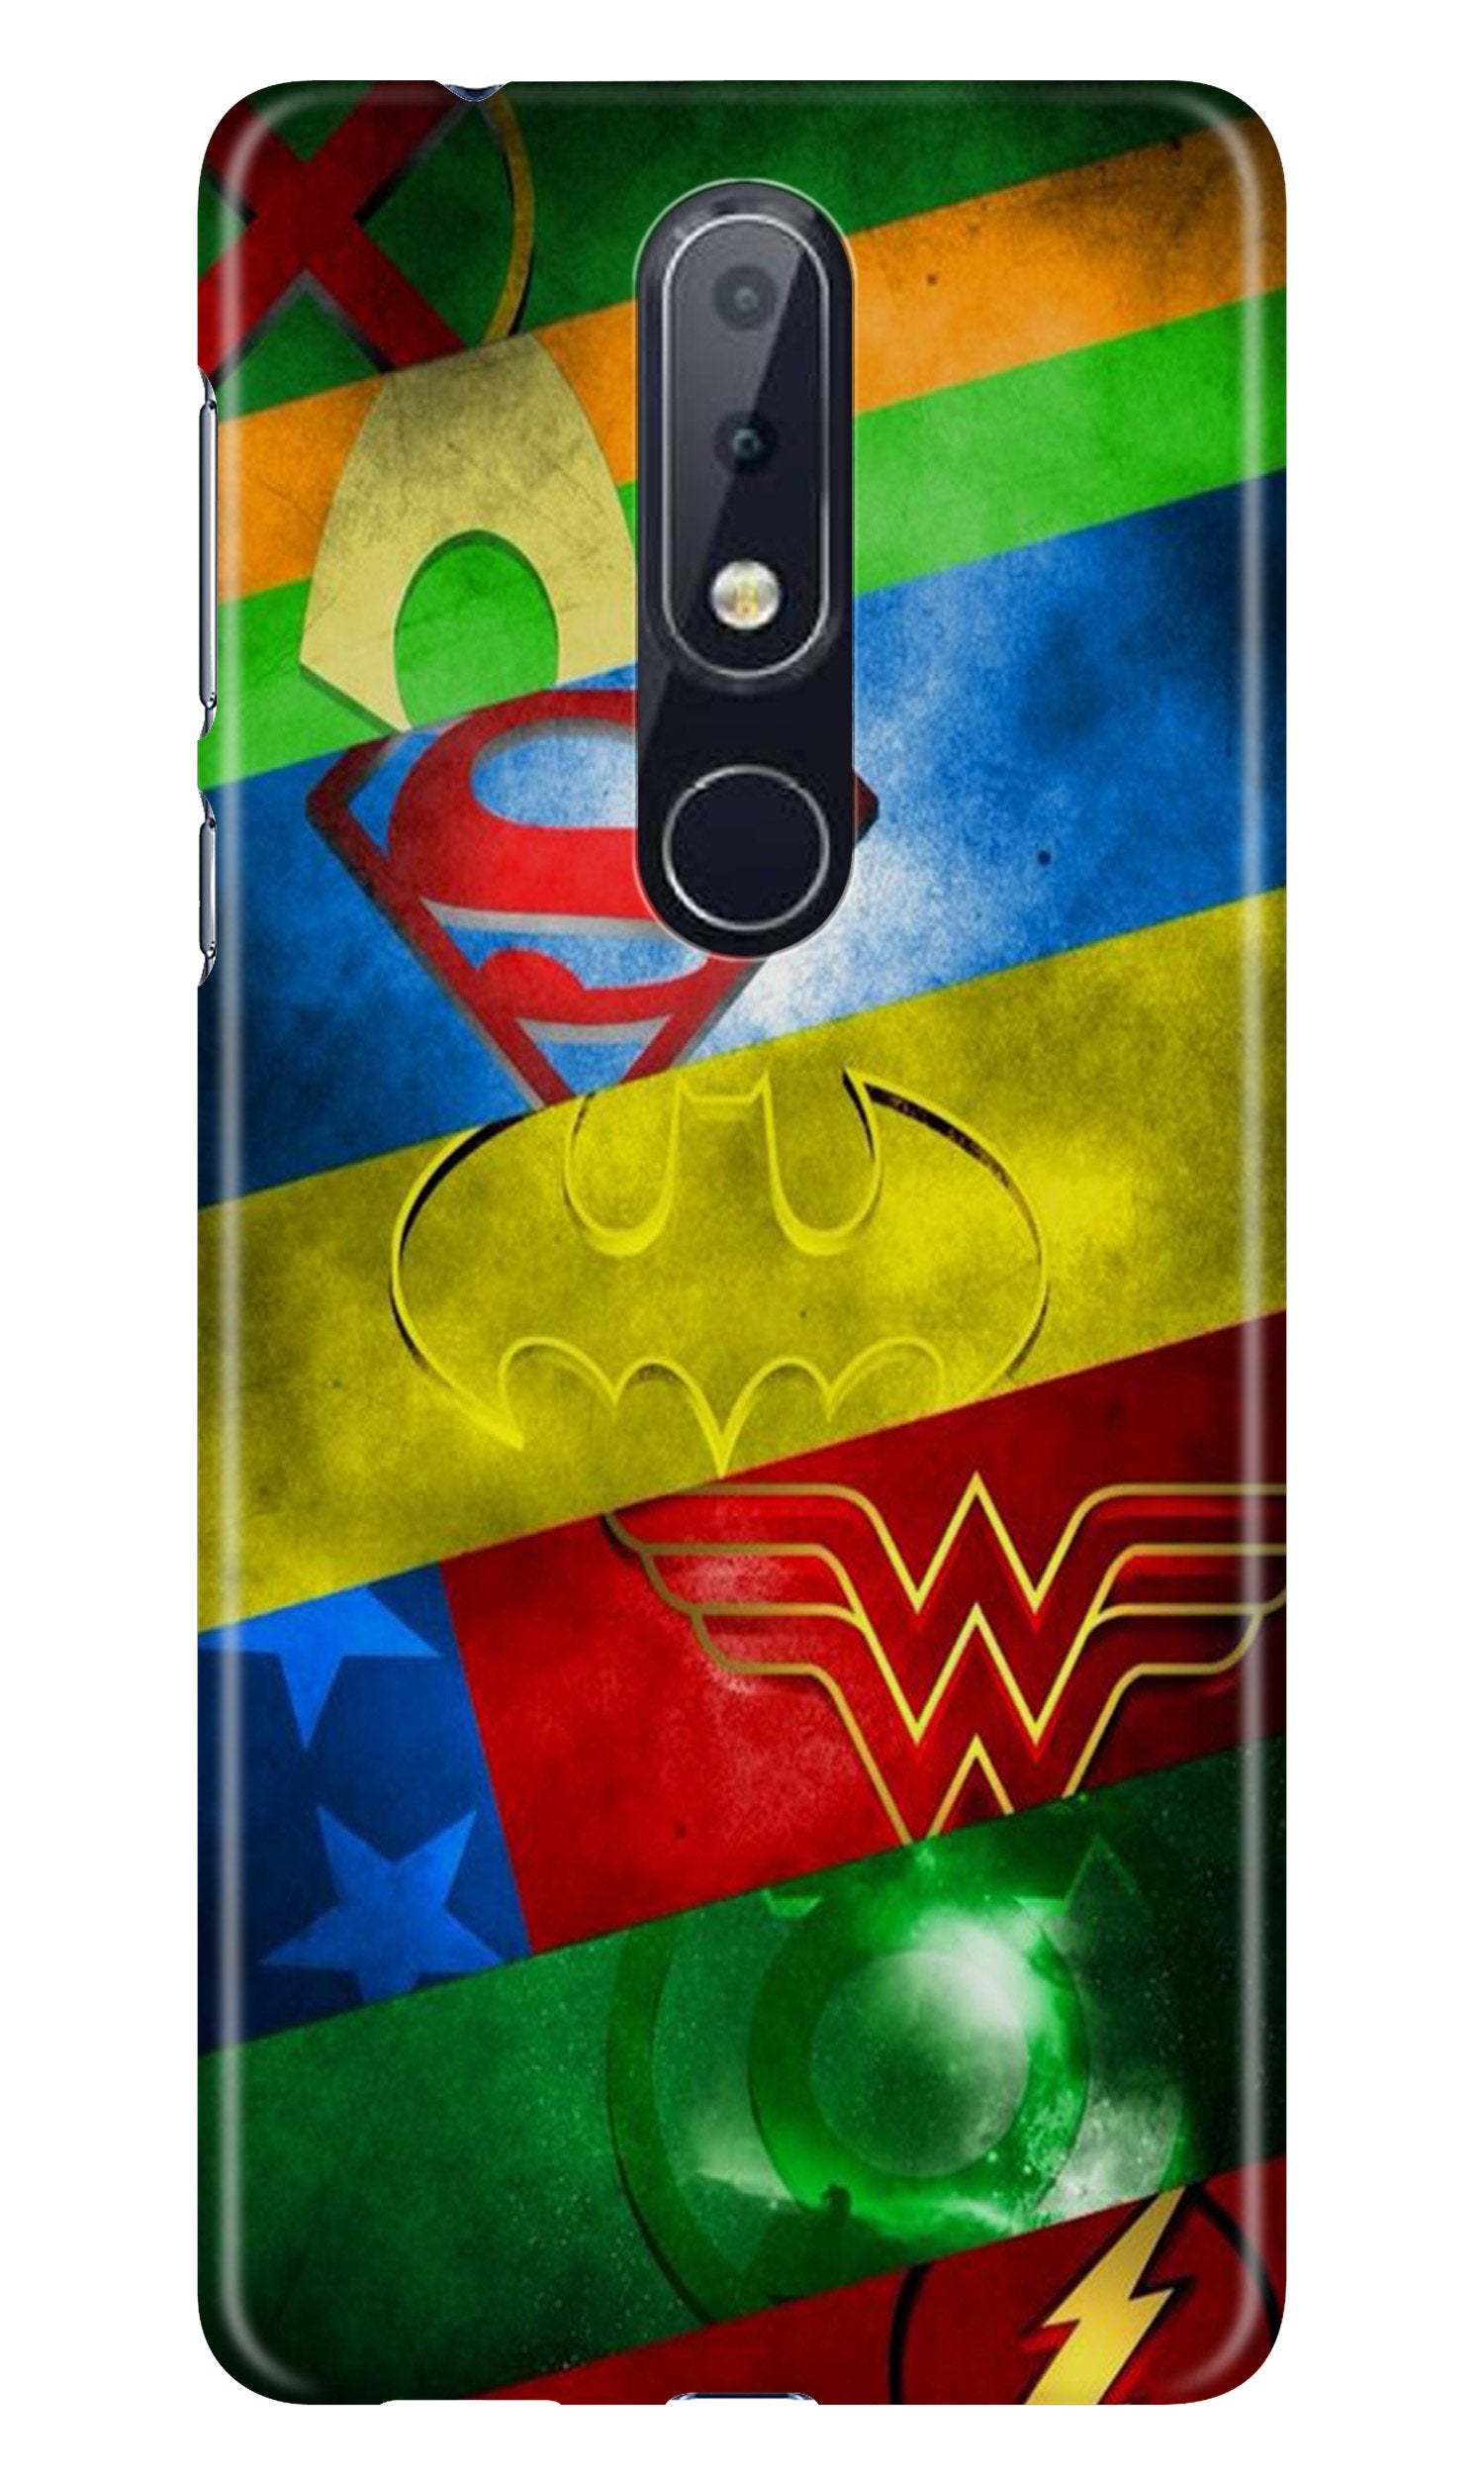 Superheros Logo Case for Nokia 4.2 (Design No. 251)